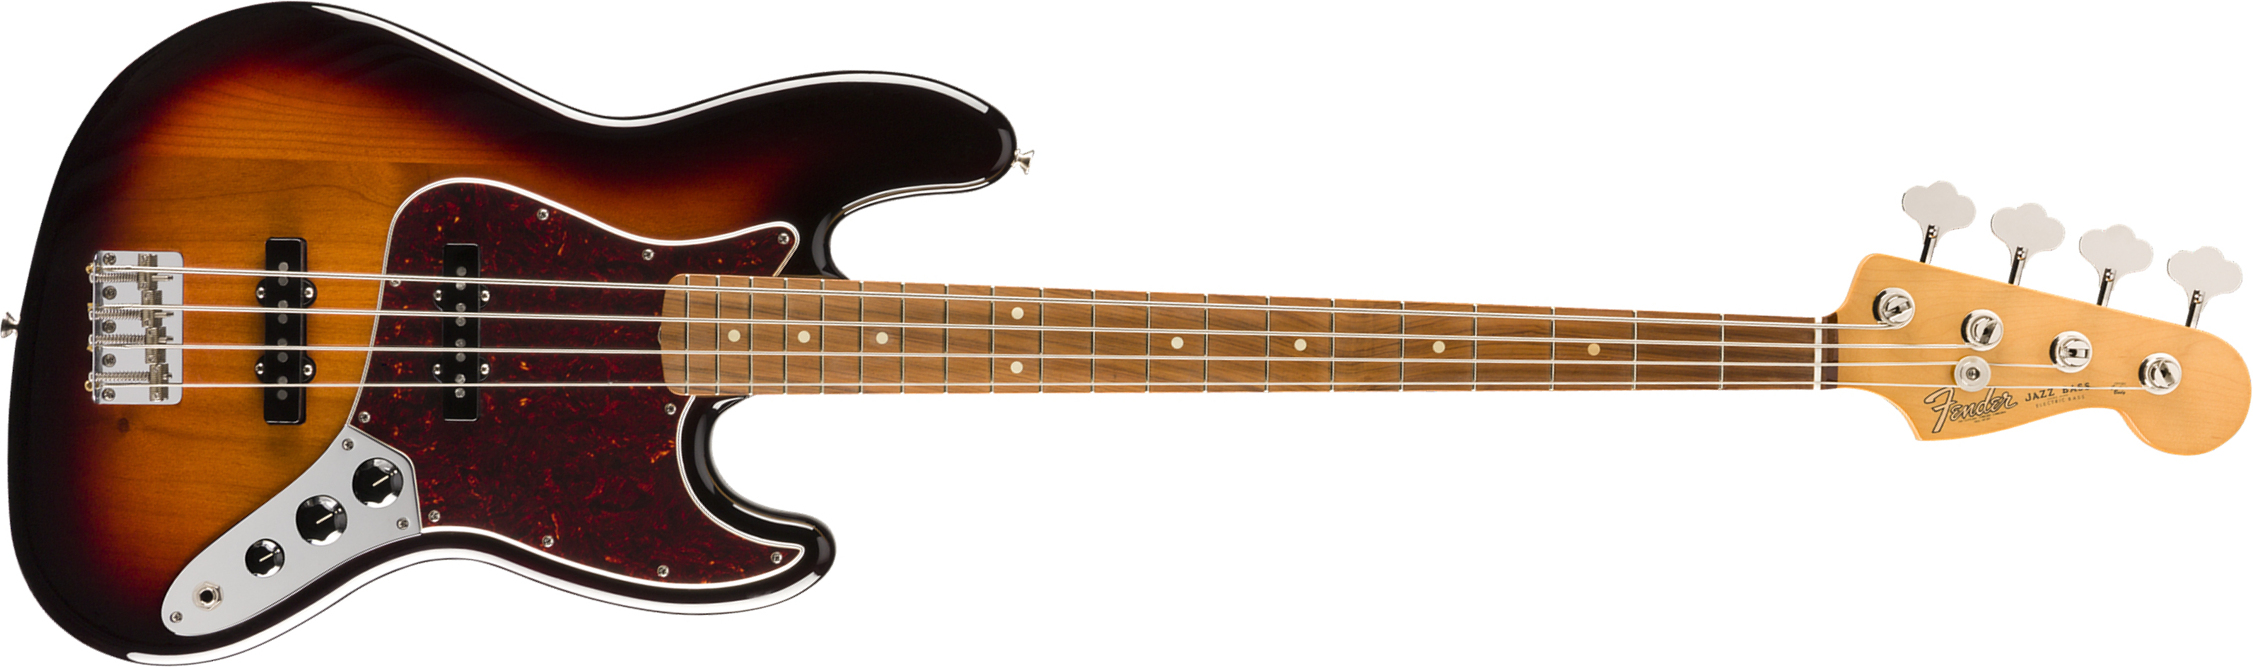 Fender Jazz Bass 60s Vintera Vintage Mex Pf - 3-color Sunburst - Bajo eléctrico de cuerpo sólido - Main picture